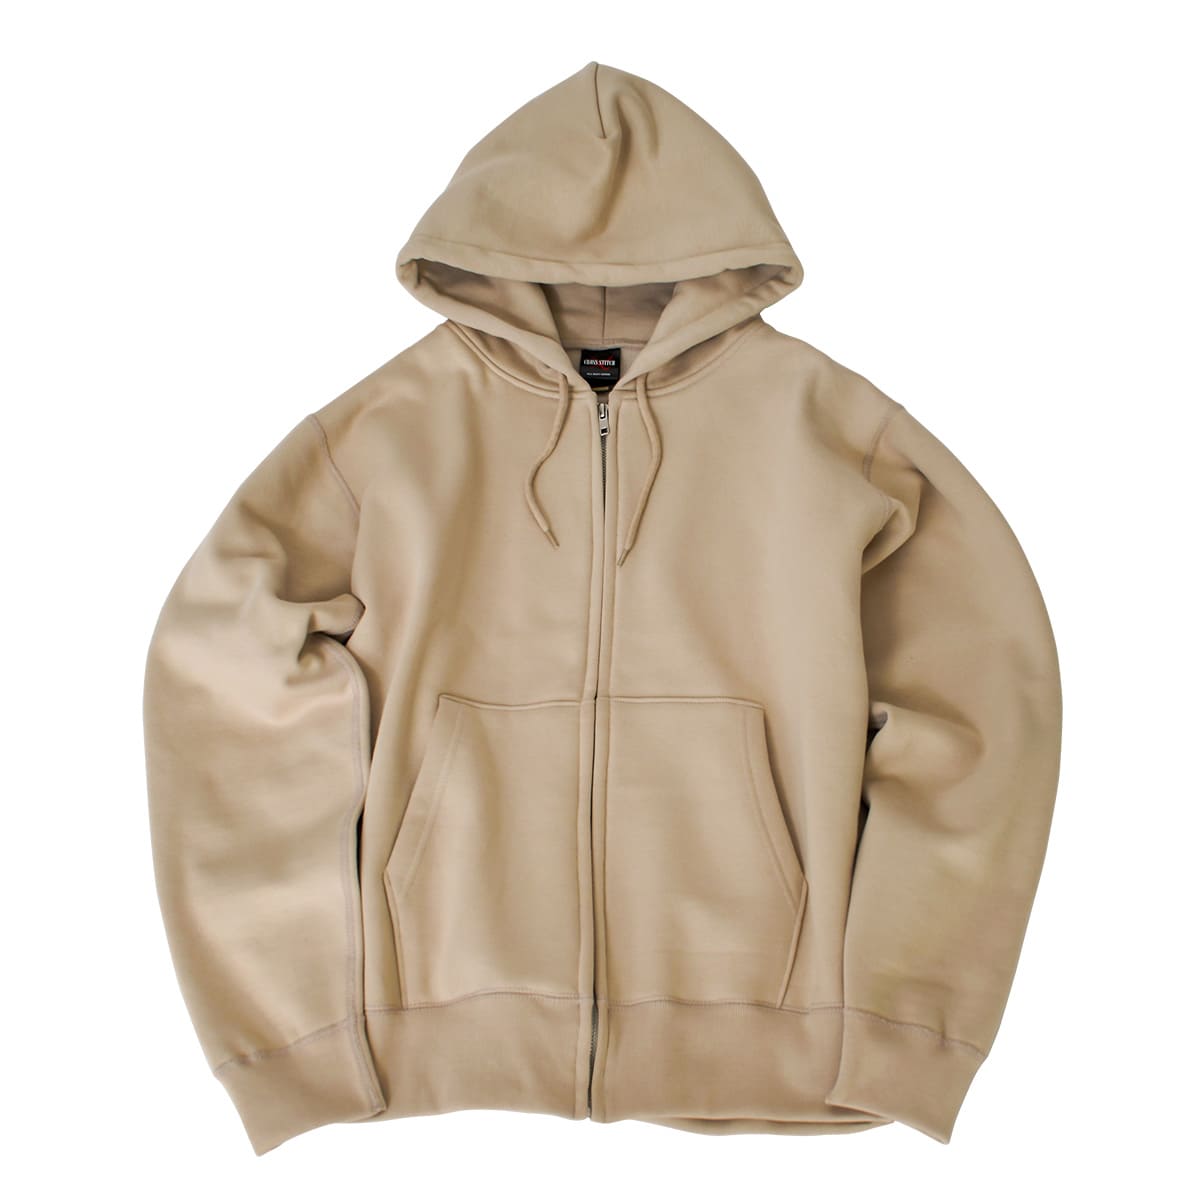 return zip hoodie brown 限定100着15500円はどうでしょうか